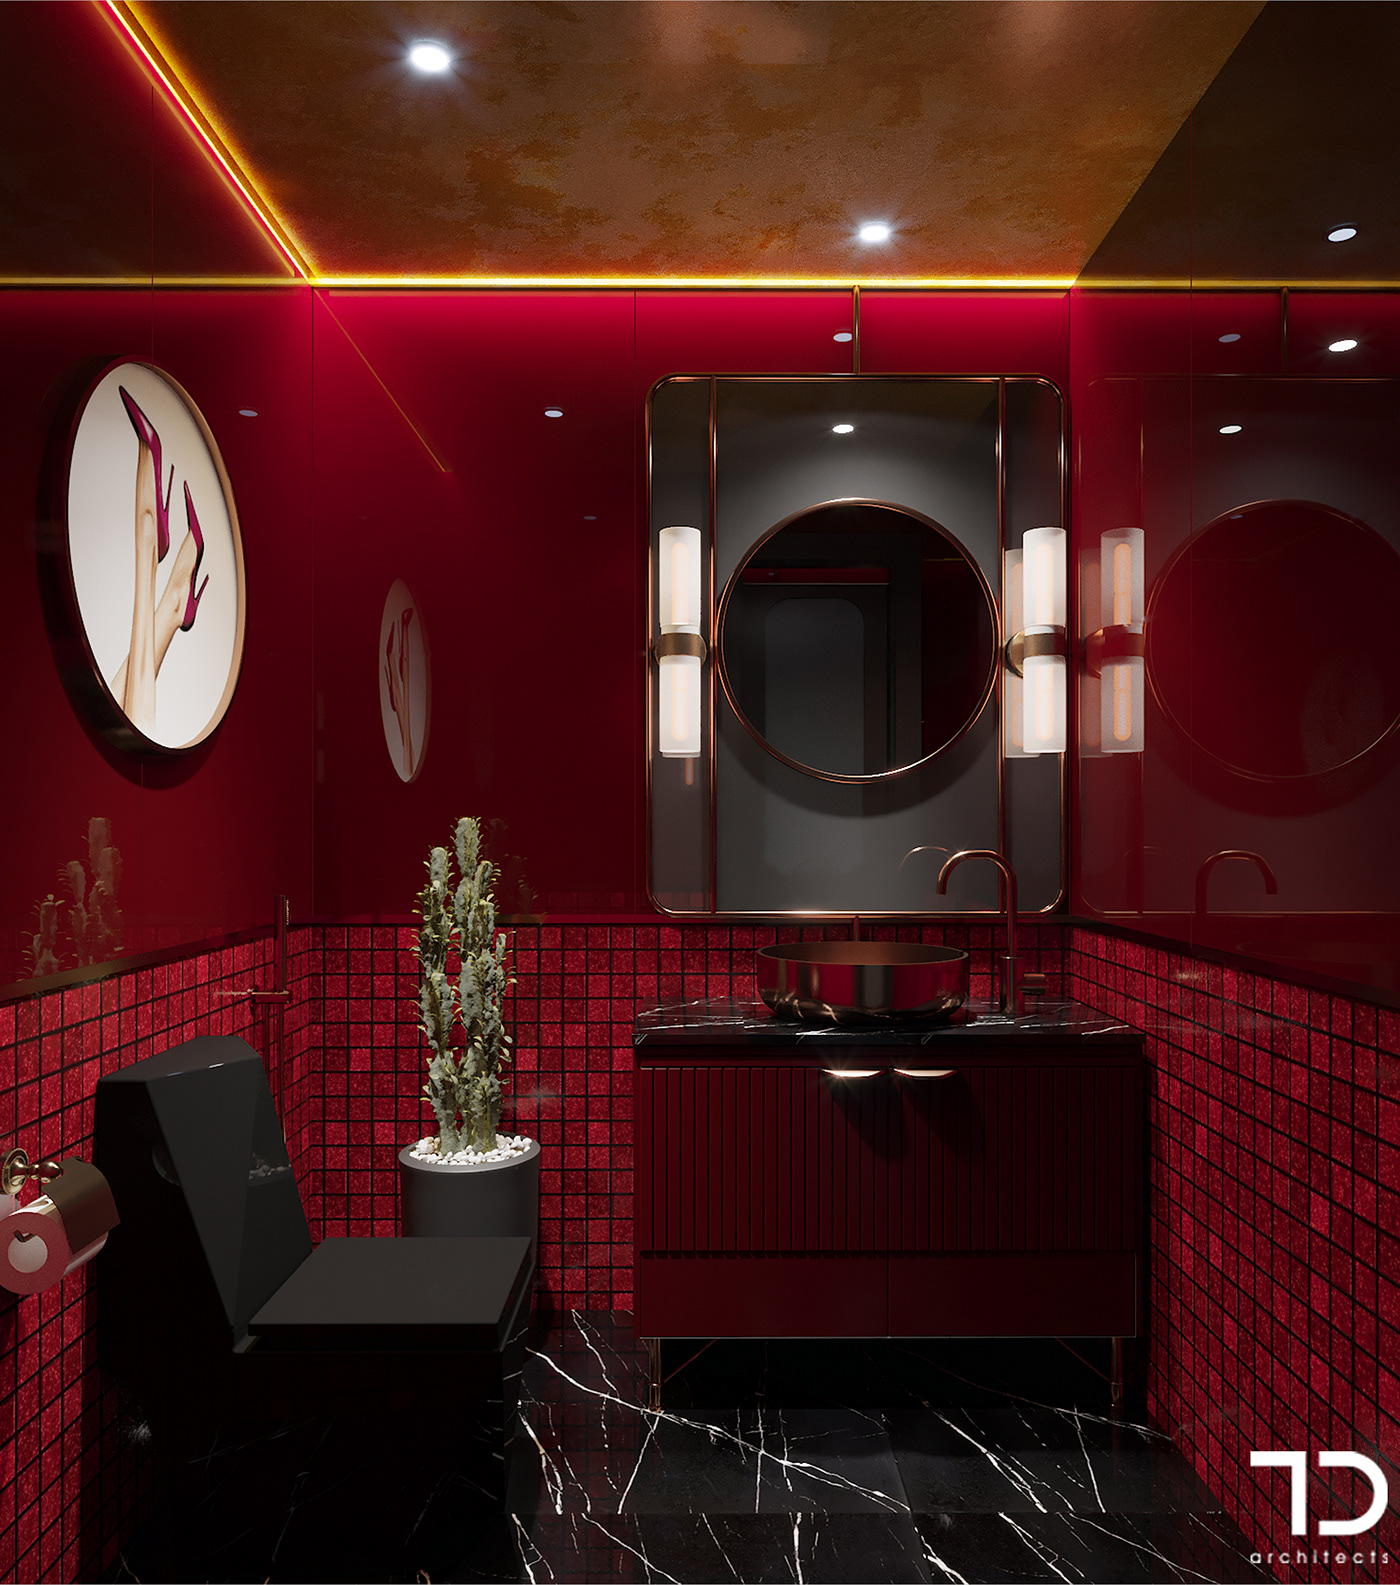 3D design designer hochiminhcity interior design  nhahang restaurant restaurant design Thiết kế nội thất